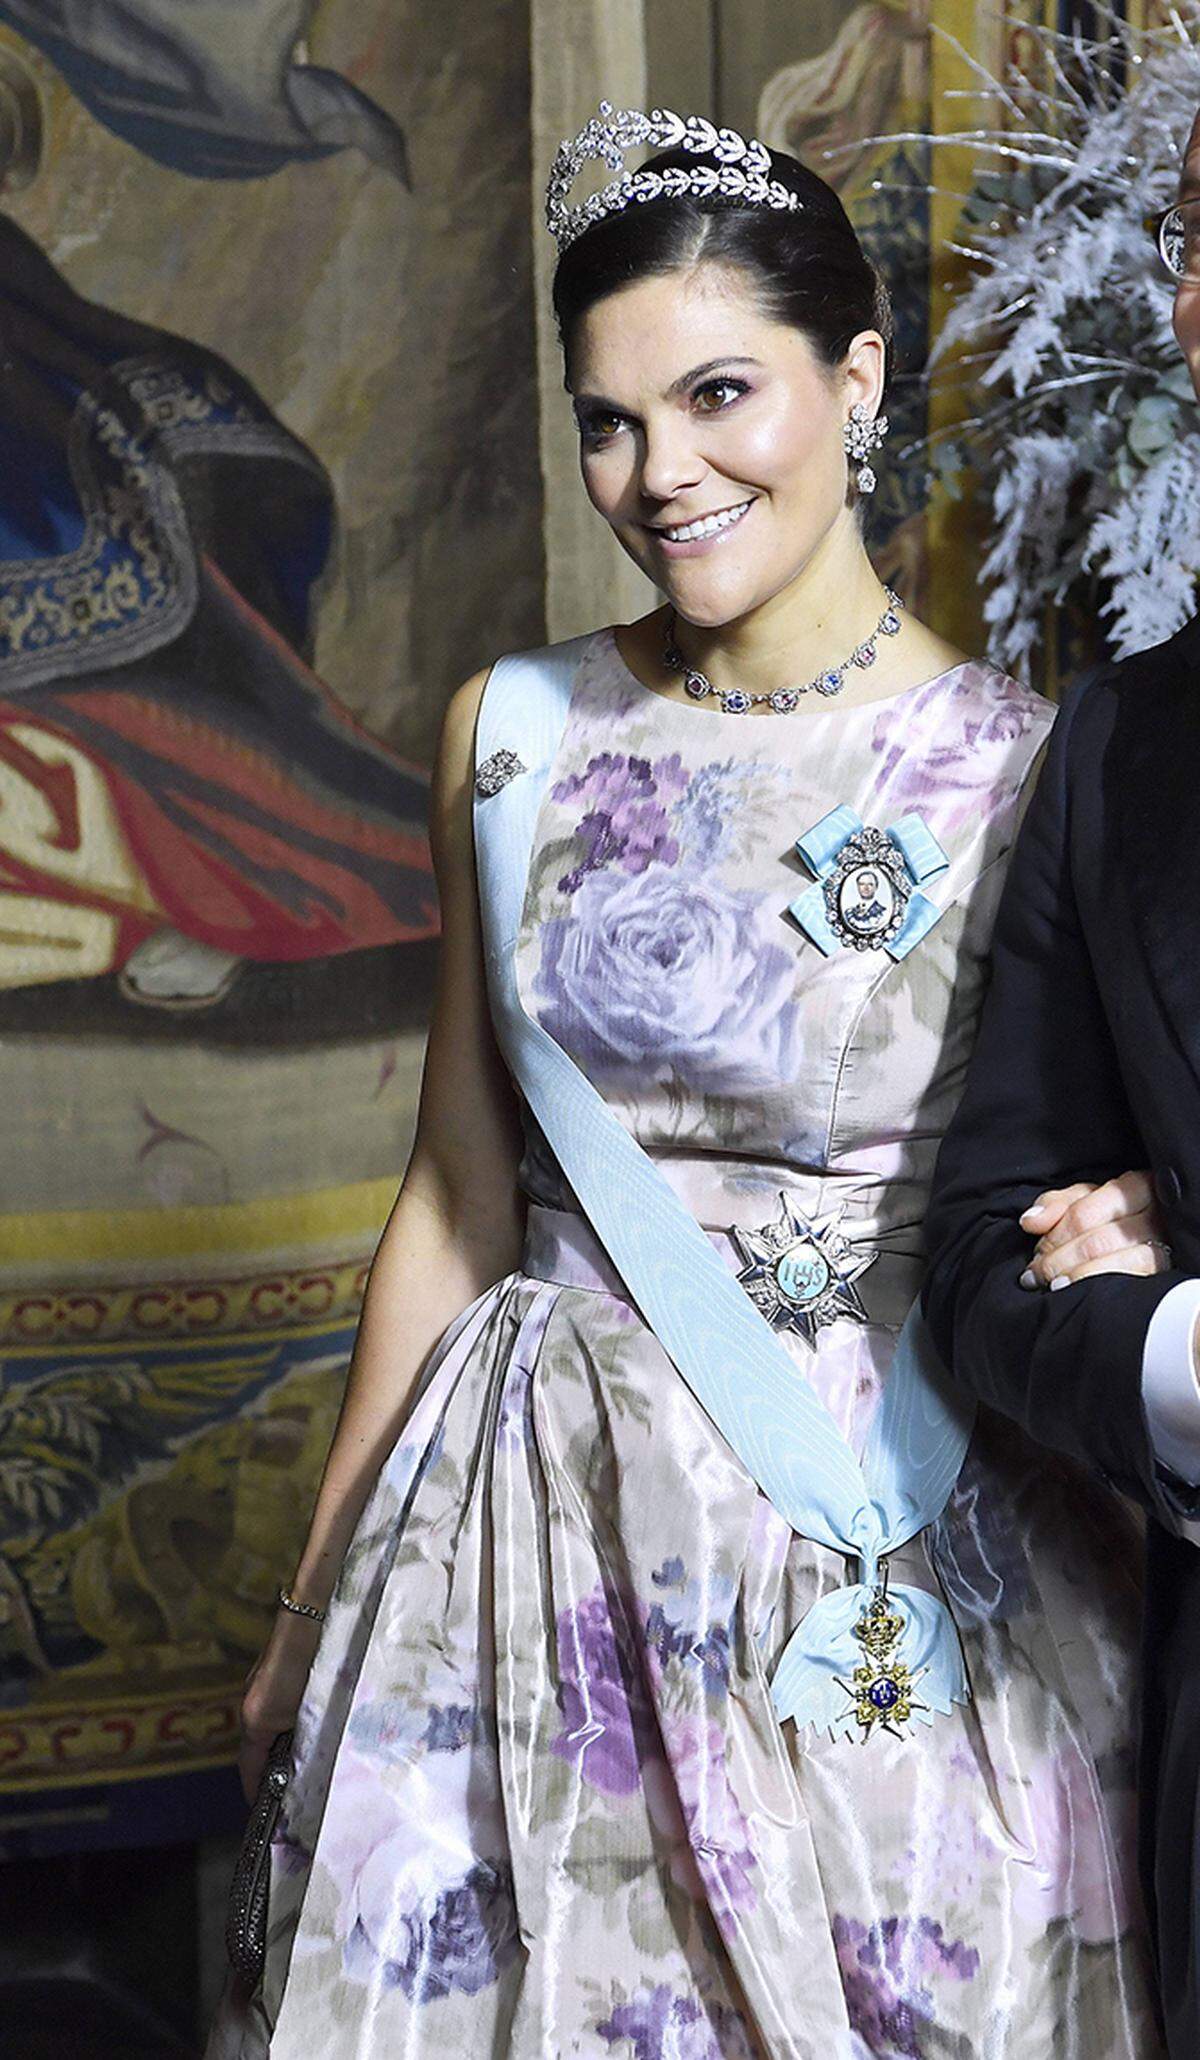 Dazu trug sie die "Lorbeerkranz-Tiara", die der 2013 verstorbenen Prinzessin Lilian gehört hatte - ihrer Großtante, die von ihren Großnichten Victoria und Madeleine heiß verehrt wurde. (Bei näherer Inspektion wirkt das Kleid der Kronprinzessin übrigens ein bisschen wie ein Duschvorhang aus den 1980er-Jahren.)